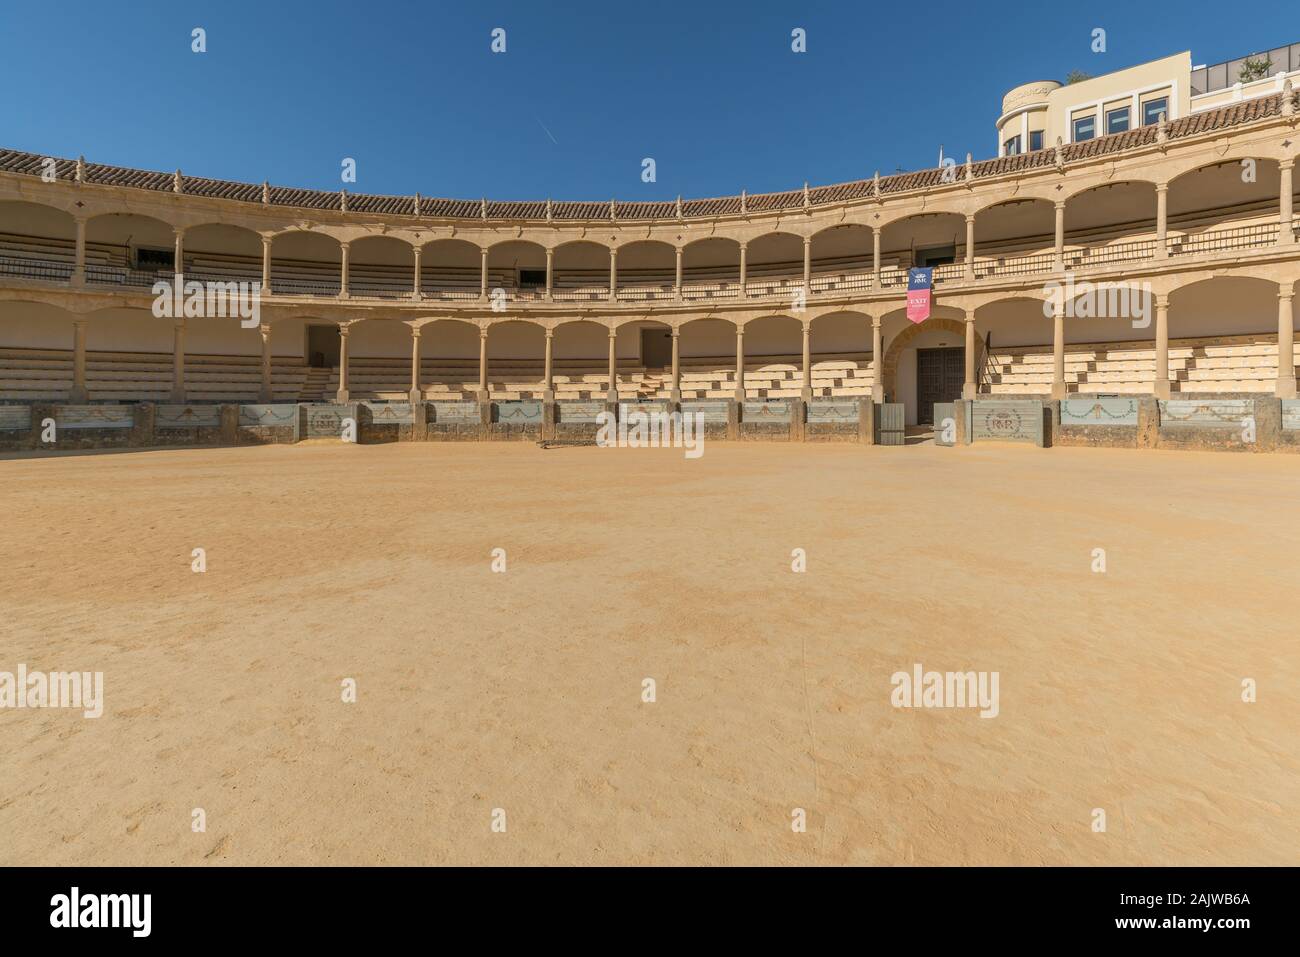 The architecture in the Plaza de Toros de Ronda, Ancient famous bullring in Ronda Stock Photo